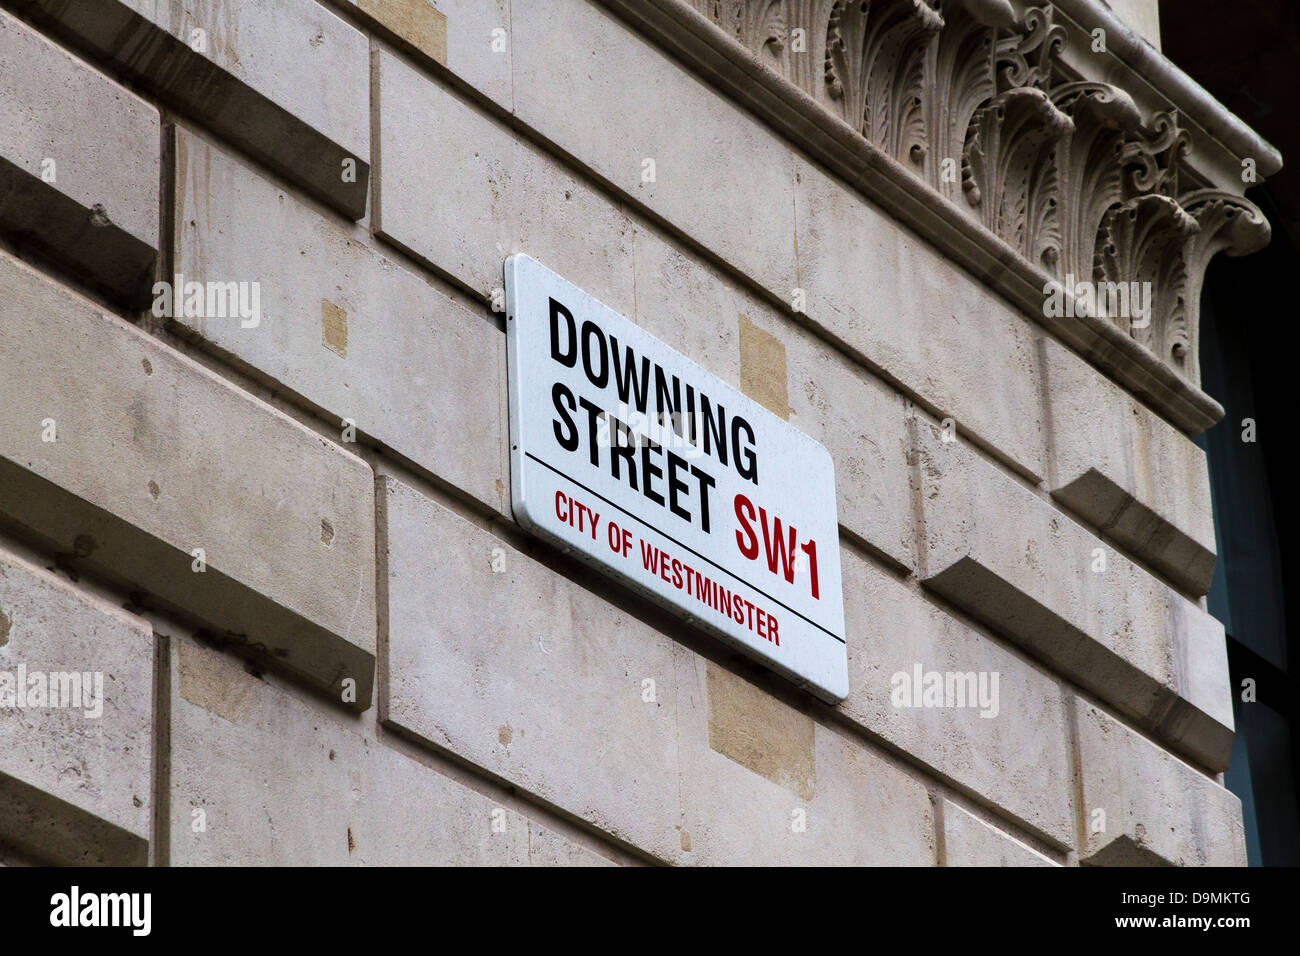 Downing Street signage / street sign, Whitehall, London, UK Stock Photo